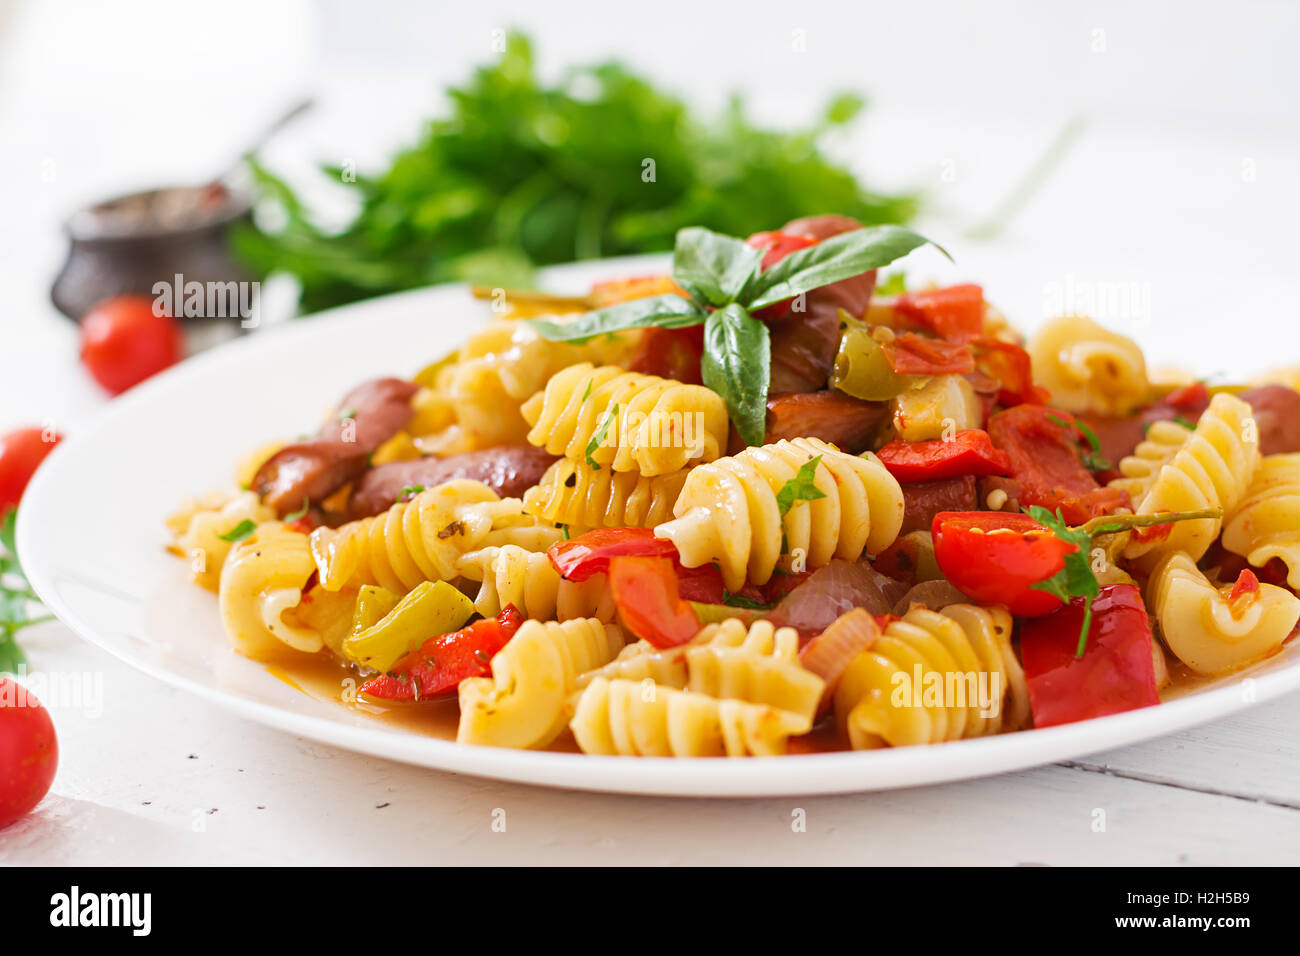 Les pâtes à la sauce tomate avec des saucisses, tomates, basilic vert décoré en plaque blanche sur un fond de bois. Banque D'Images